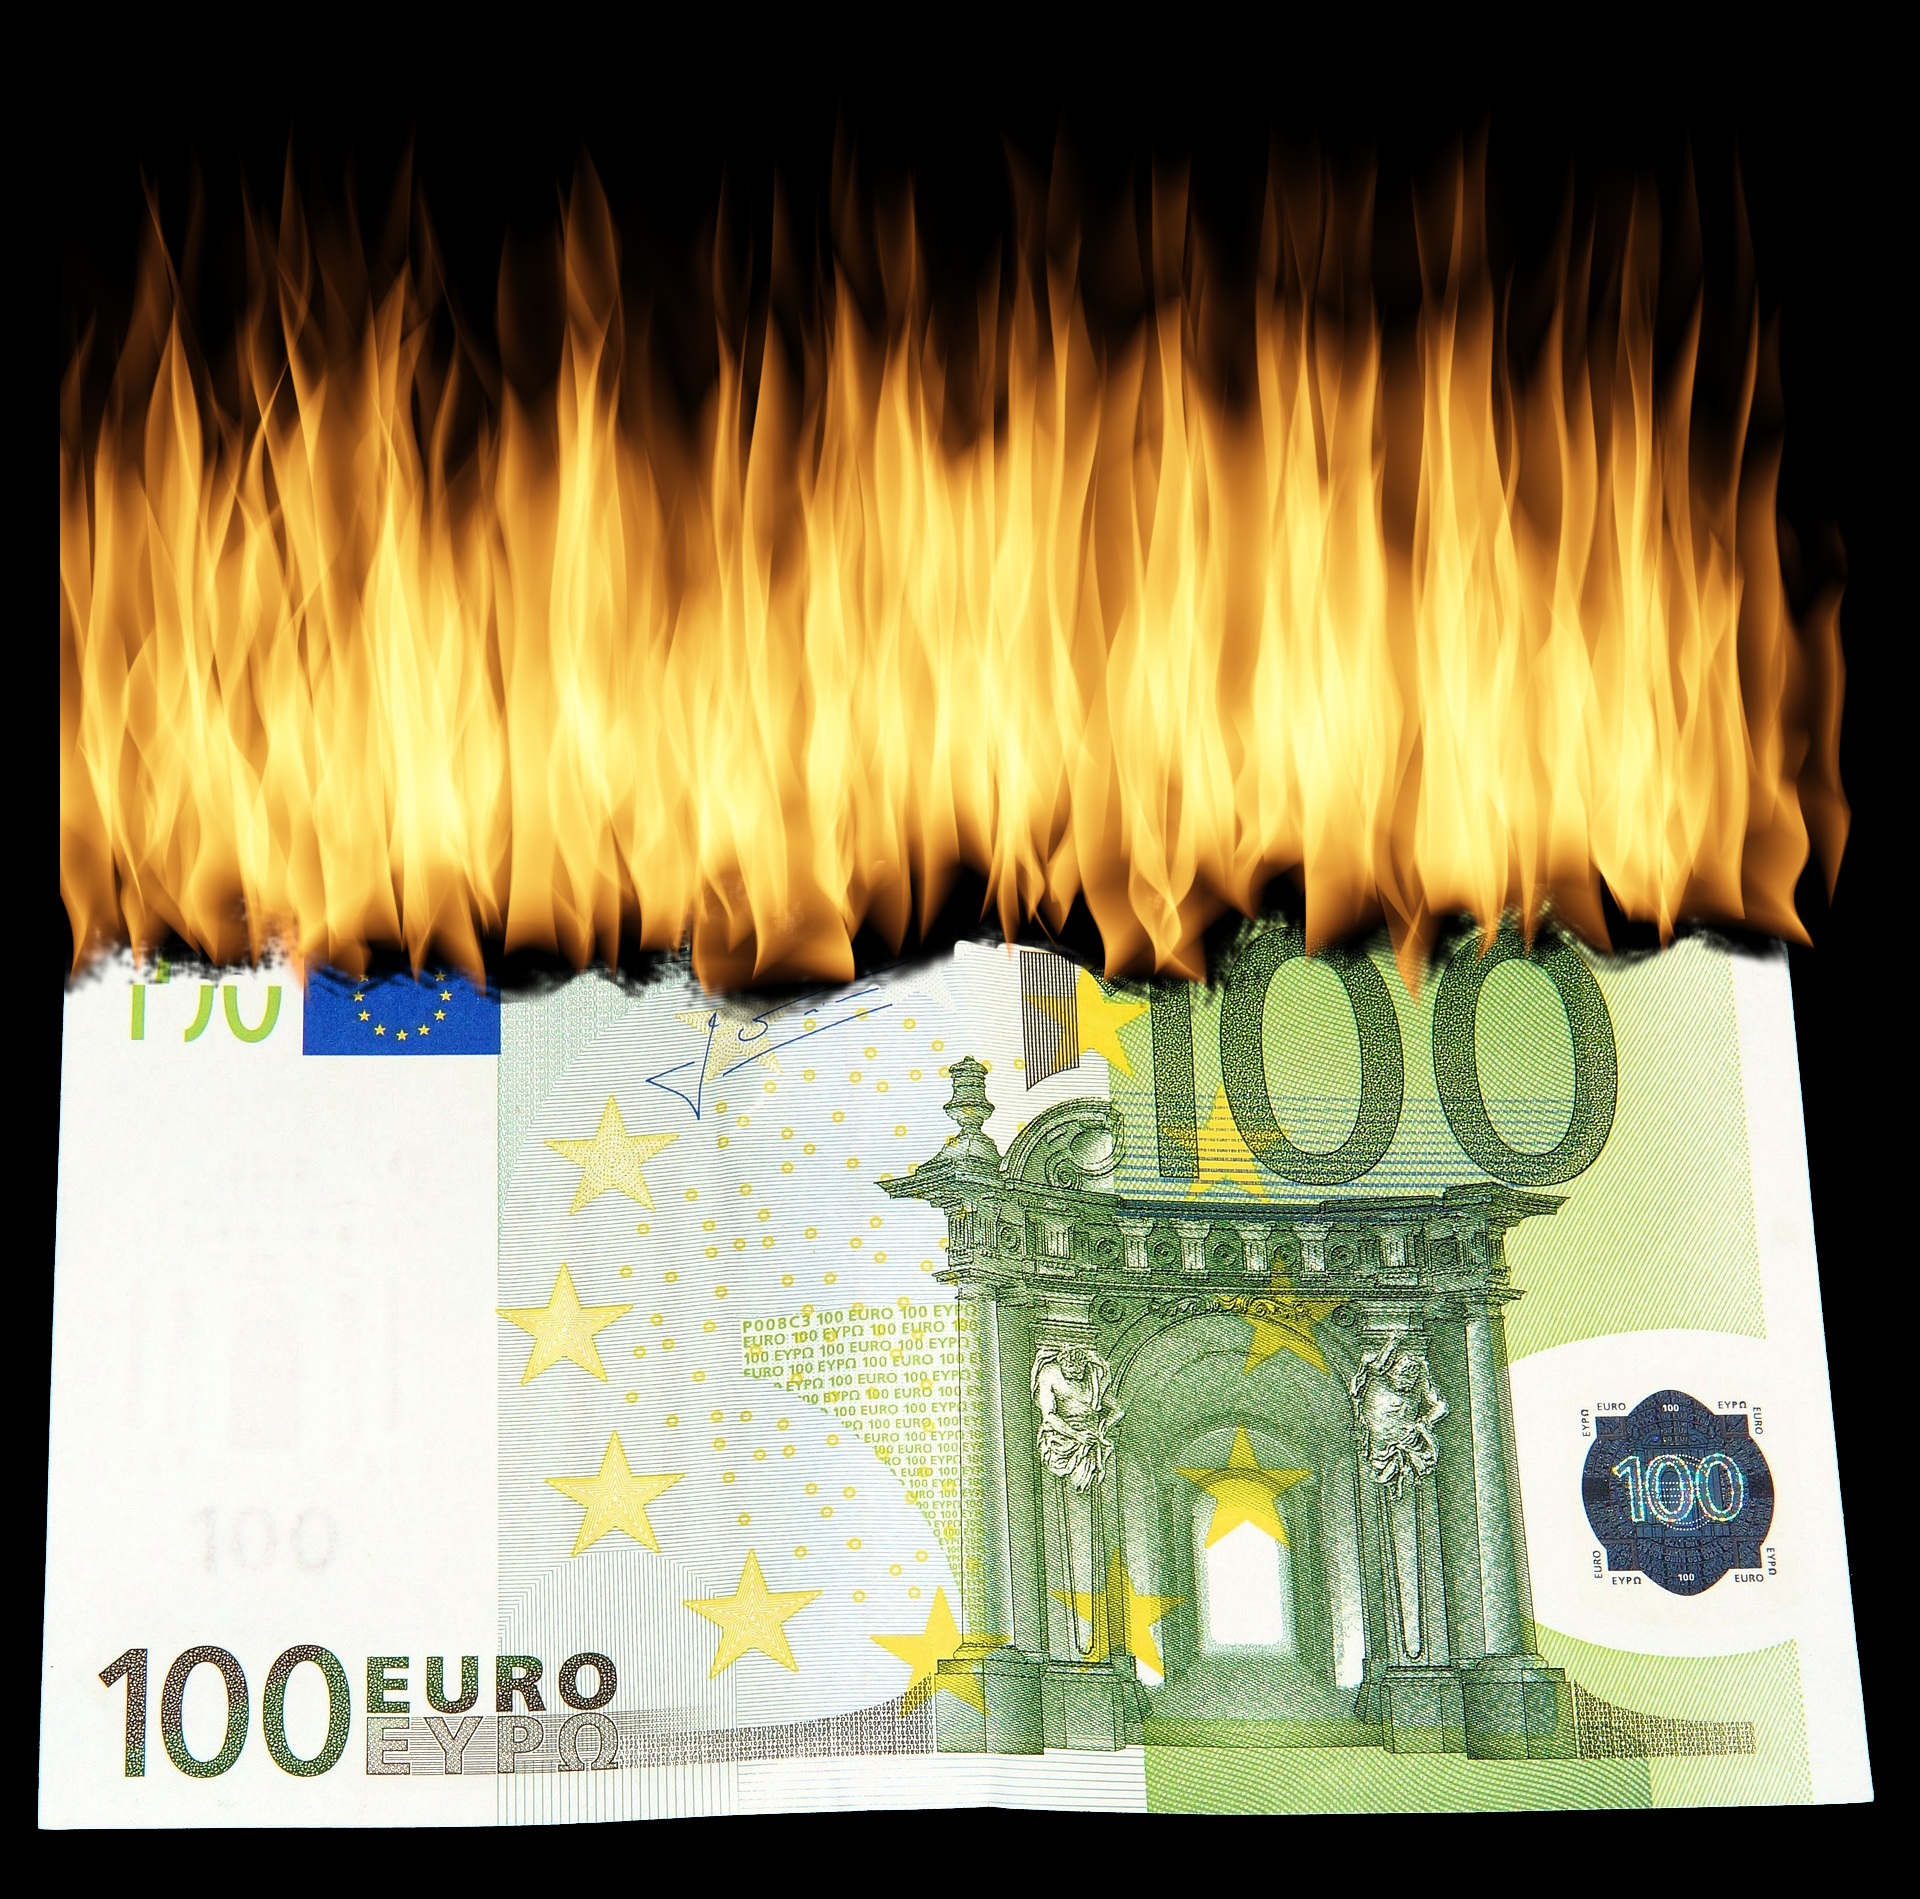 Bild: Brennender 100 Euro-Schein